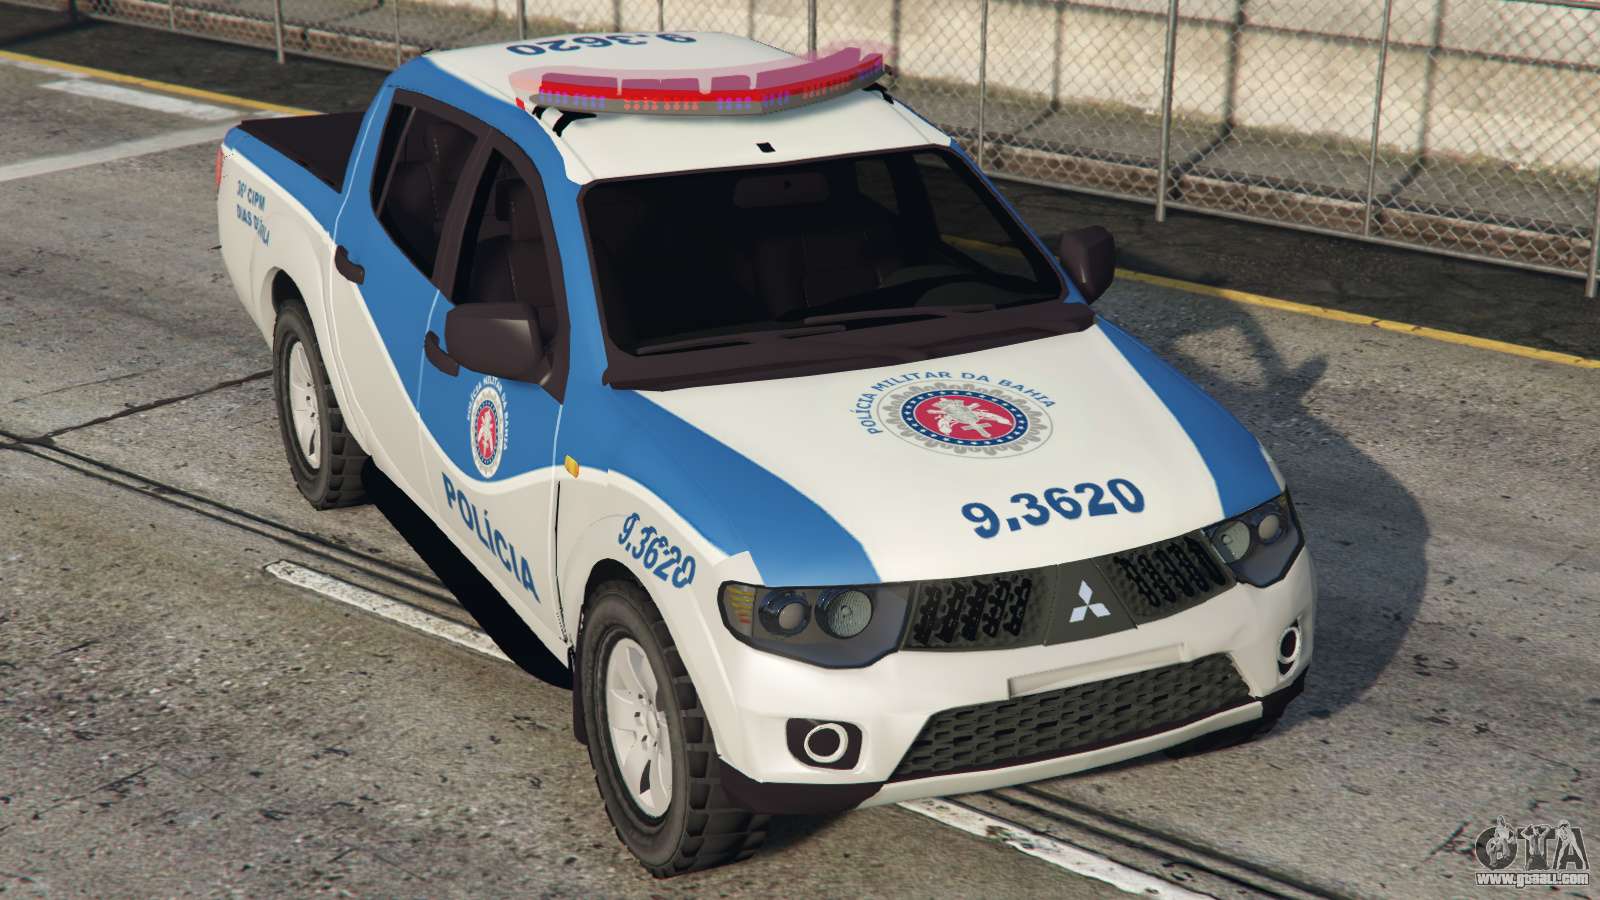 Volkswagen Amarok Policia Militar da Bahia - GTA5-Mods.com